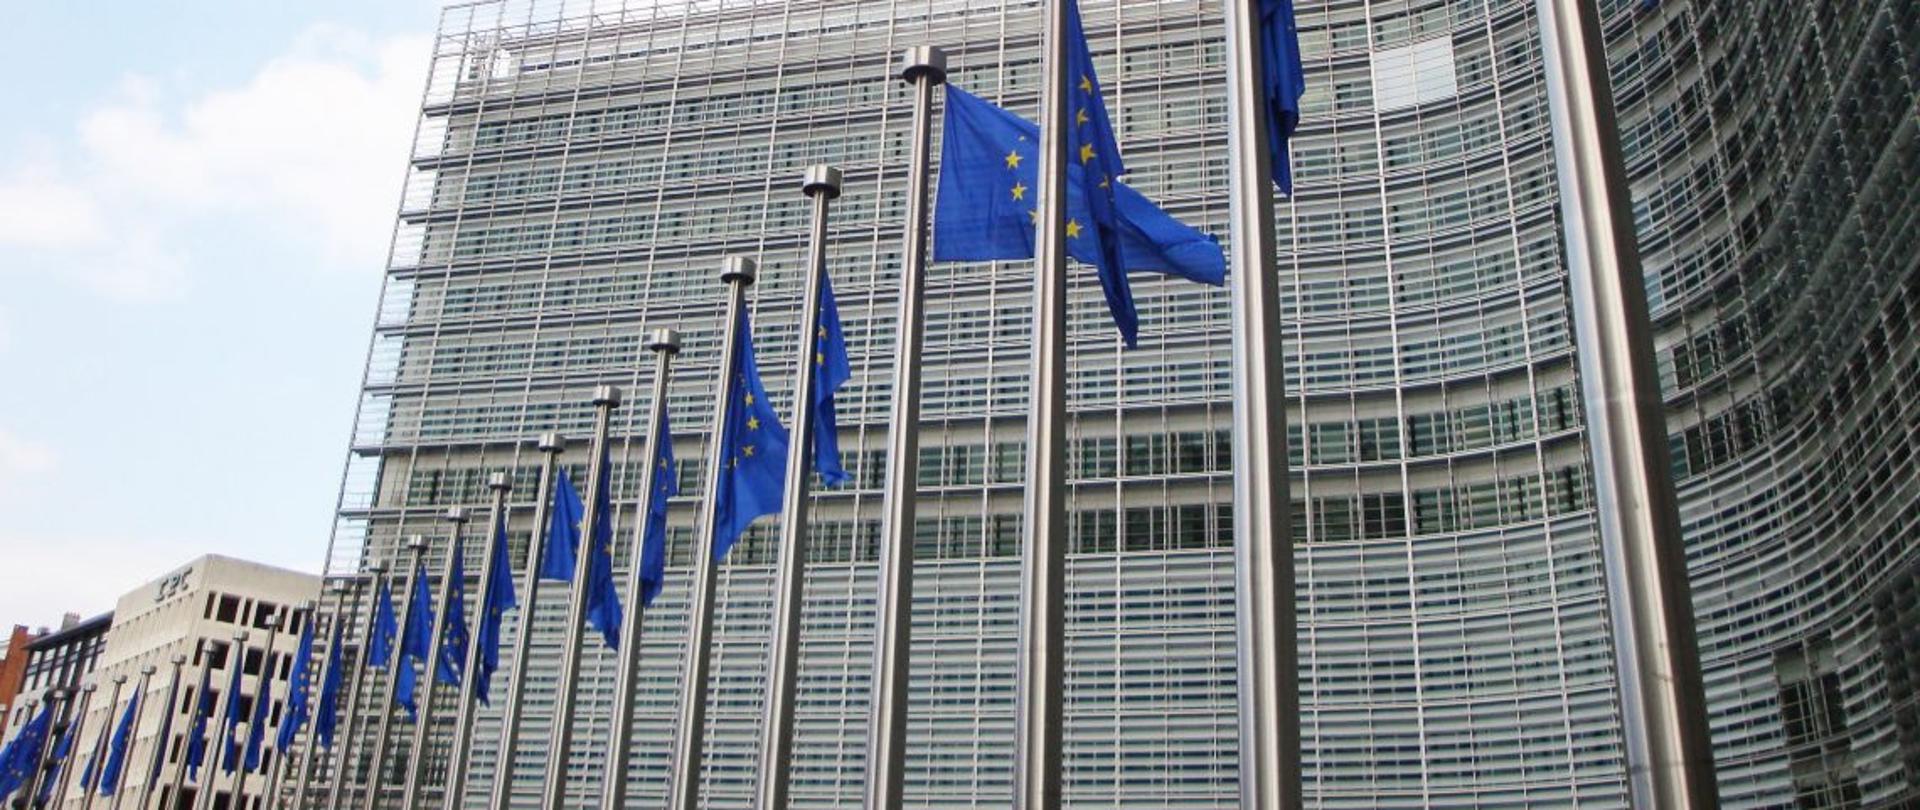 Budynek Komisji Europejskiej - maszty z flagami